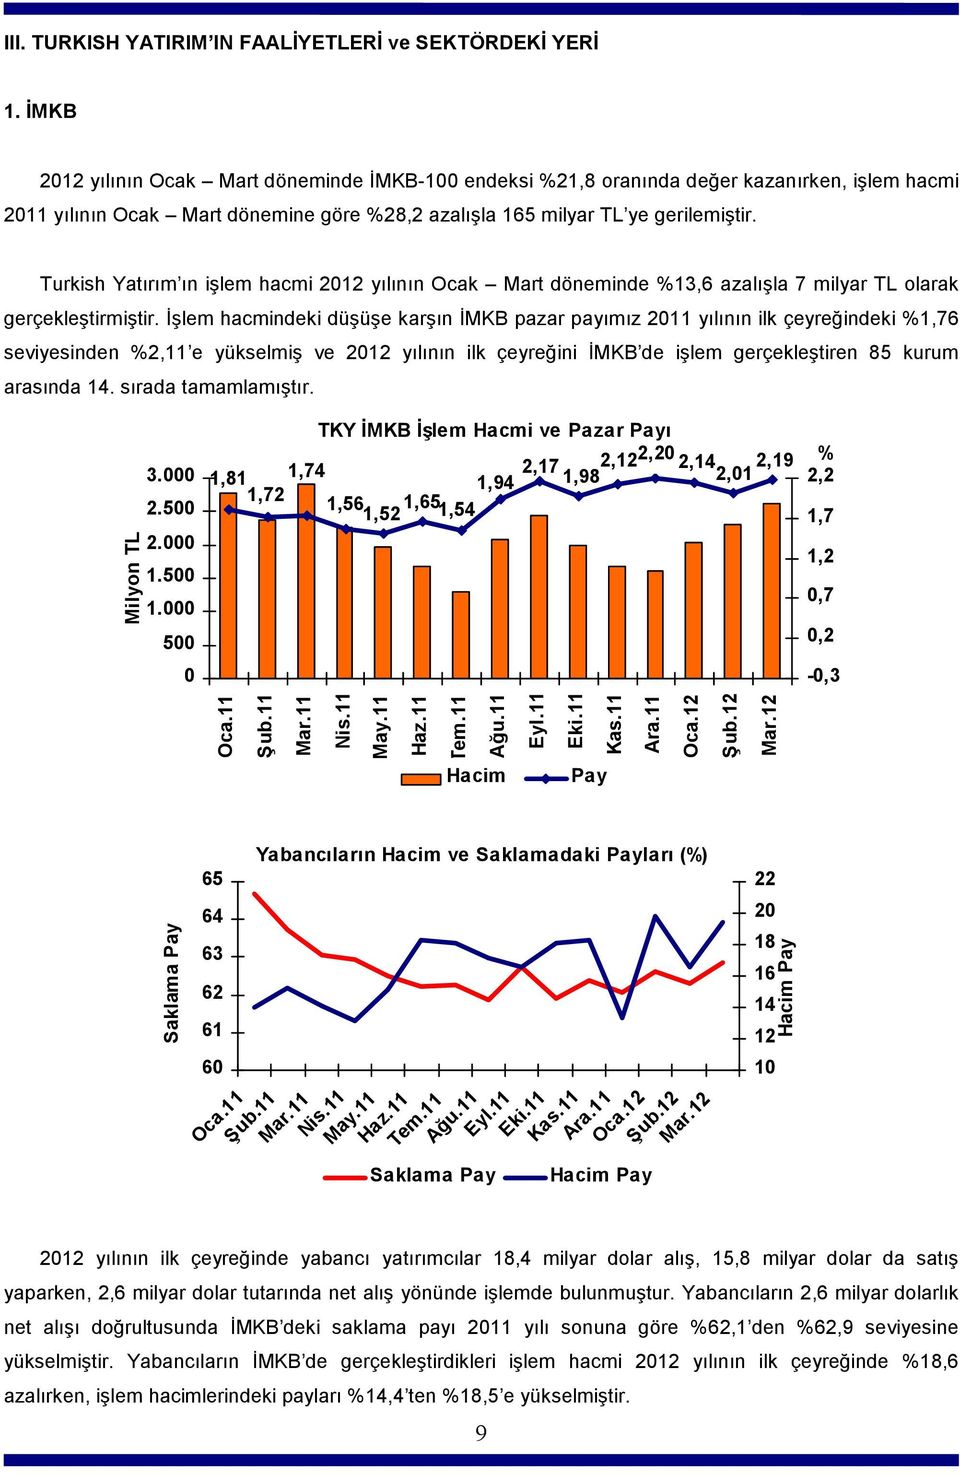 Turkish Yatırım ın işlem hacmi 2012 yılının Ocak Mart döneminde %13,6 azalışla 7 milyar TL olarak gerçekleştirmiştir.